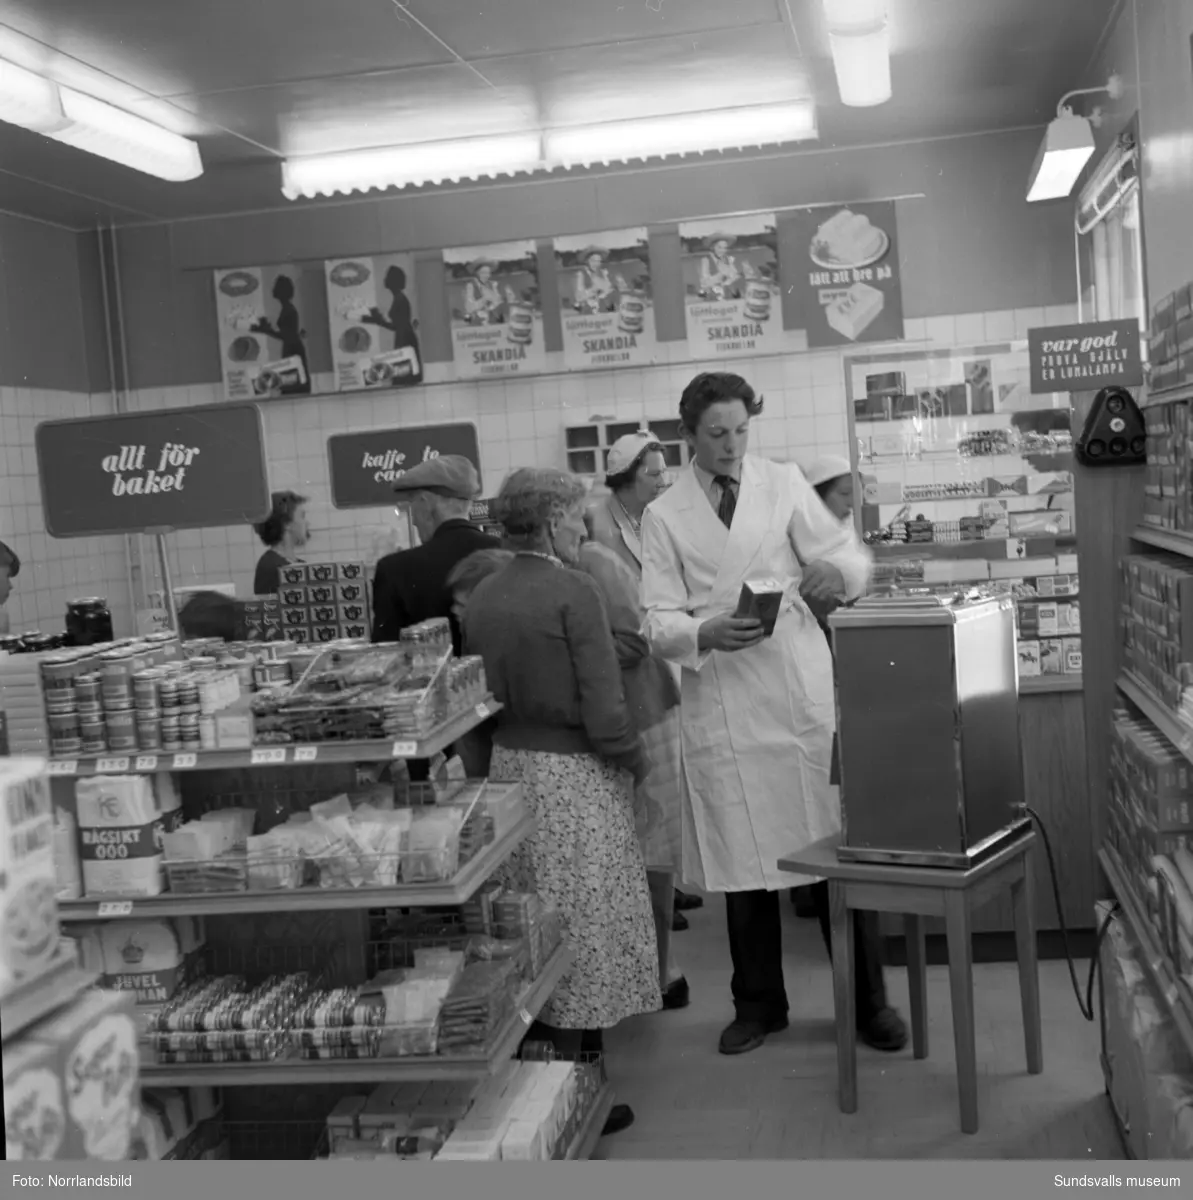 I juni 1955 var det nypremiär för Konsum på Södermalmsgatan 24 och lilla Pia som var där med sin mamma fick en sparbössa i form av en liten Cirkelkaffeburk. Affären som var stadens allra första konsumbutik startades 1916 med handlare Carl Fredrik Jonsson som föreståndare.  Festligheterna 1955 föranleddes av att butiken moderniserats och byggts om till självbetjäningsbutik, fått nya kylrum och kyldiskar, samt utrustats med nymodigheter som diskar för djupfrysta varor. Byggnaden är numera riven och ersatt av bostäder.